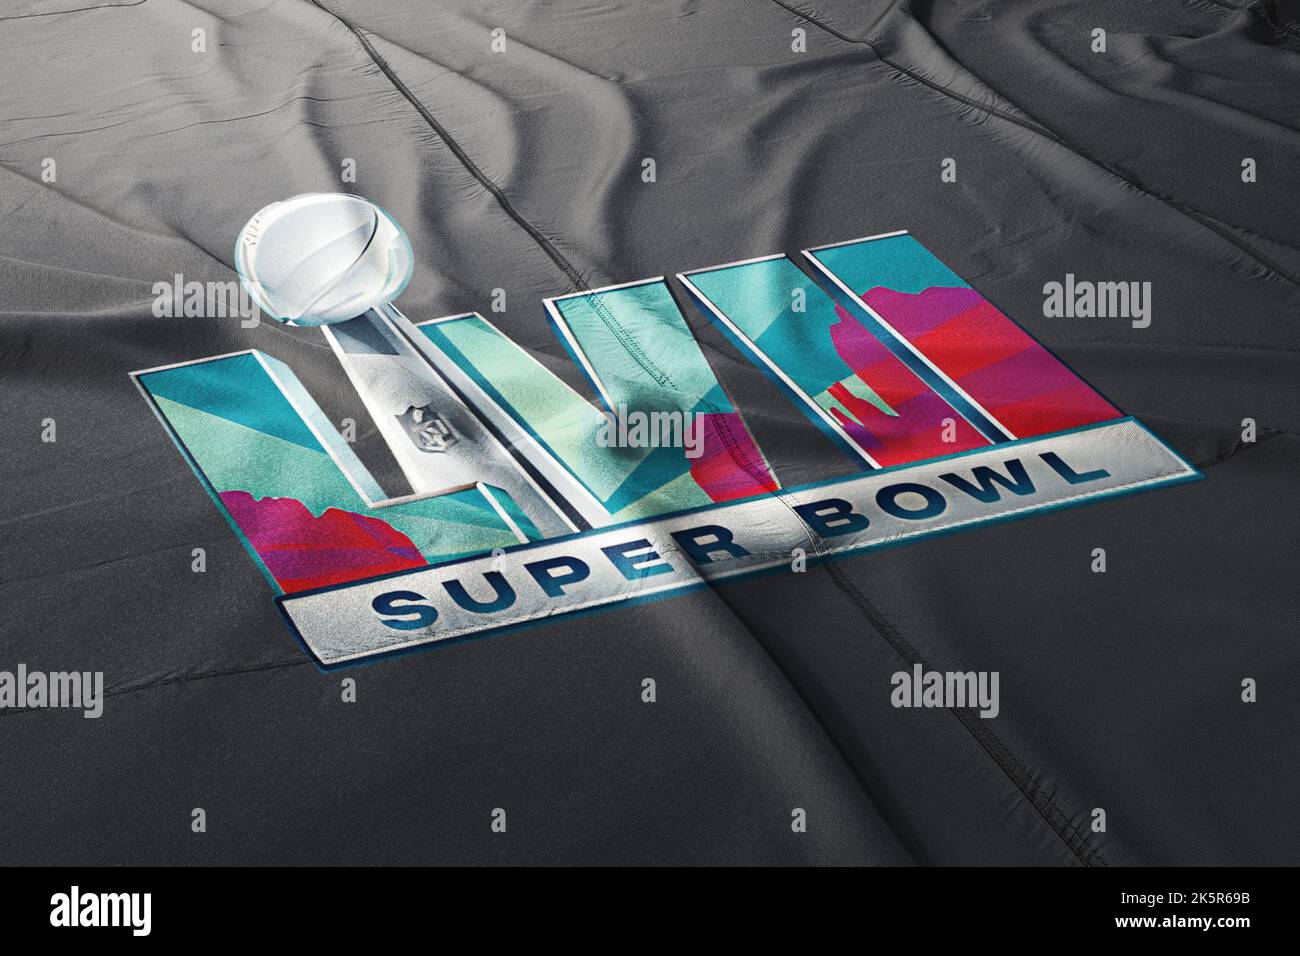 Ilustración de la próxima liga nacional de fútbol del evento lvii 2023 de Super Bowl, Foto de stock